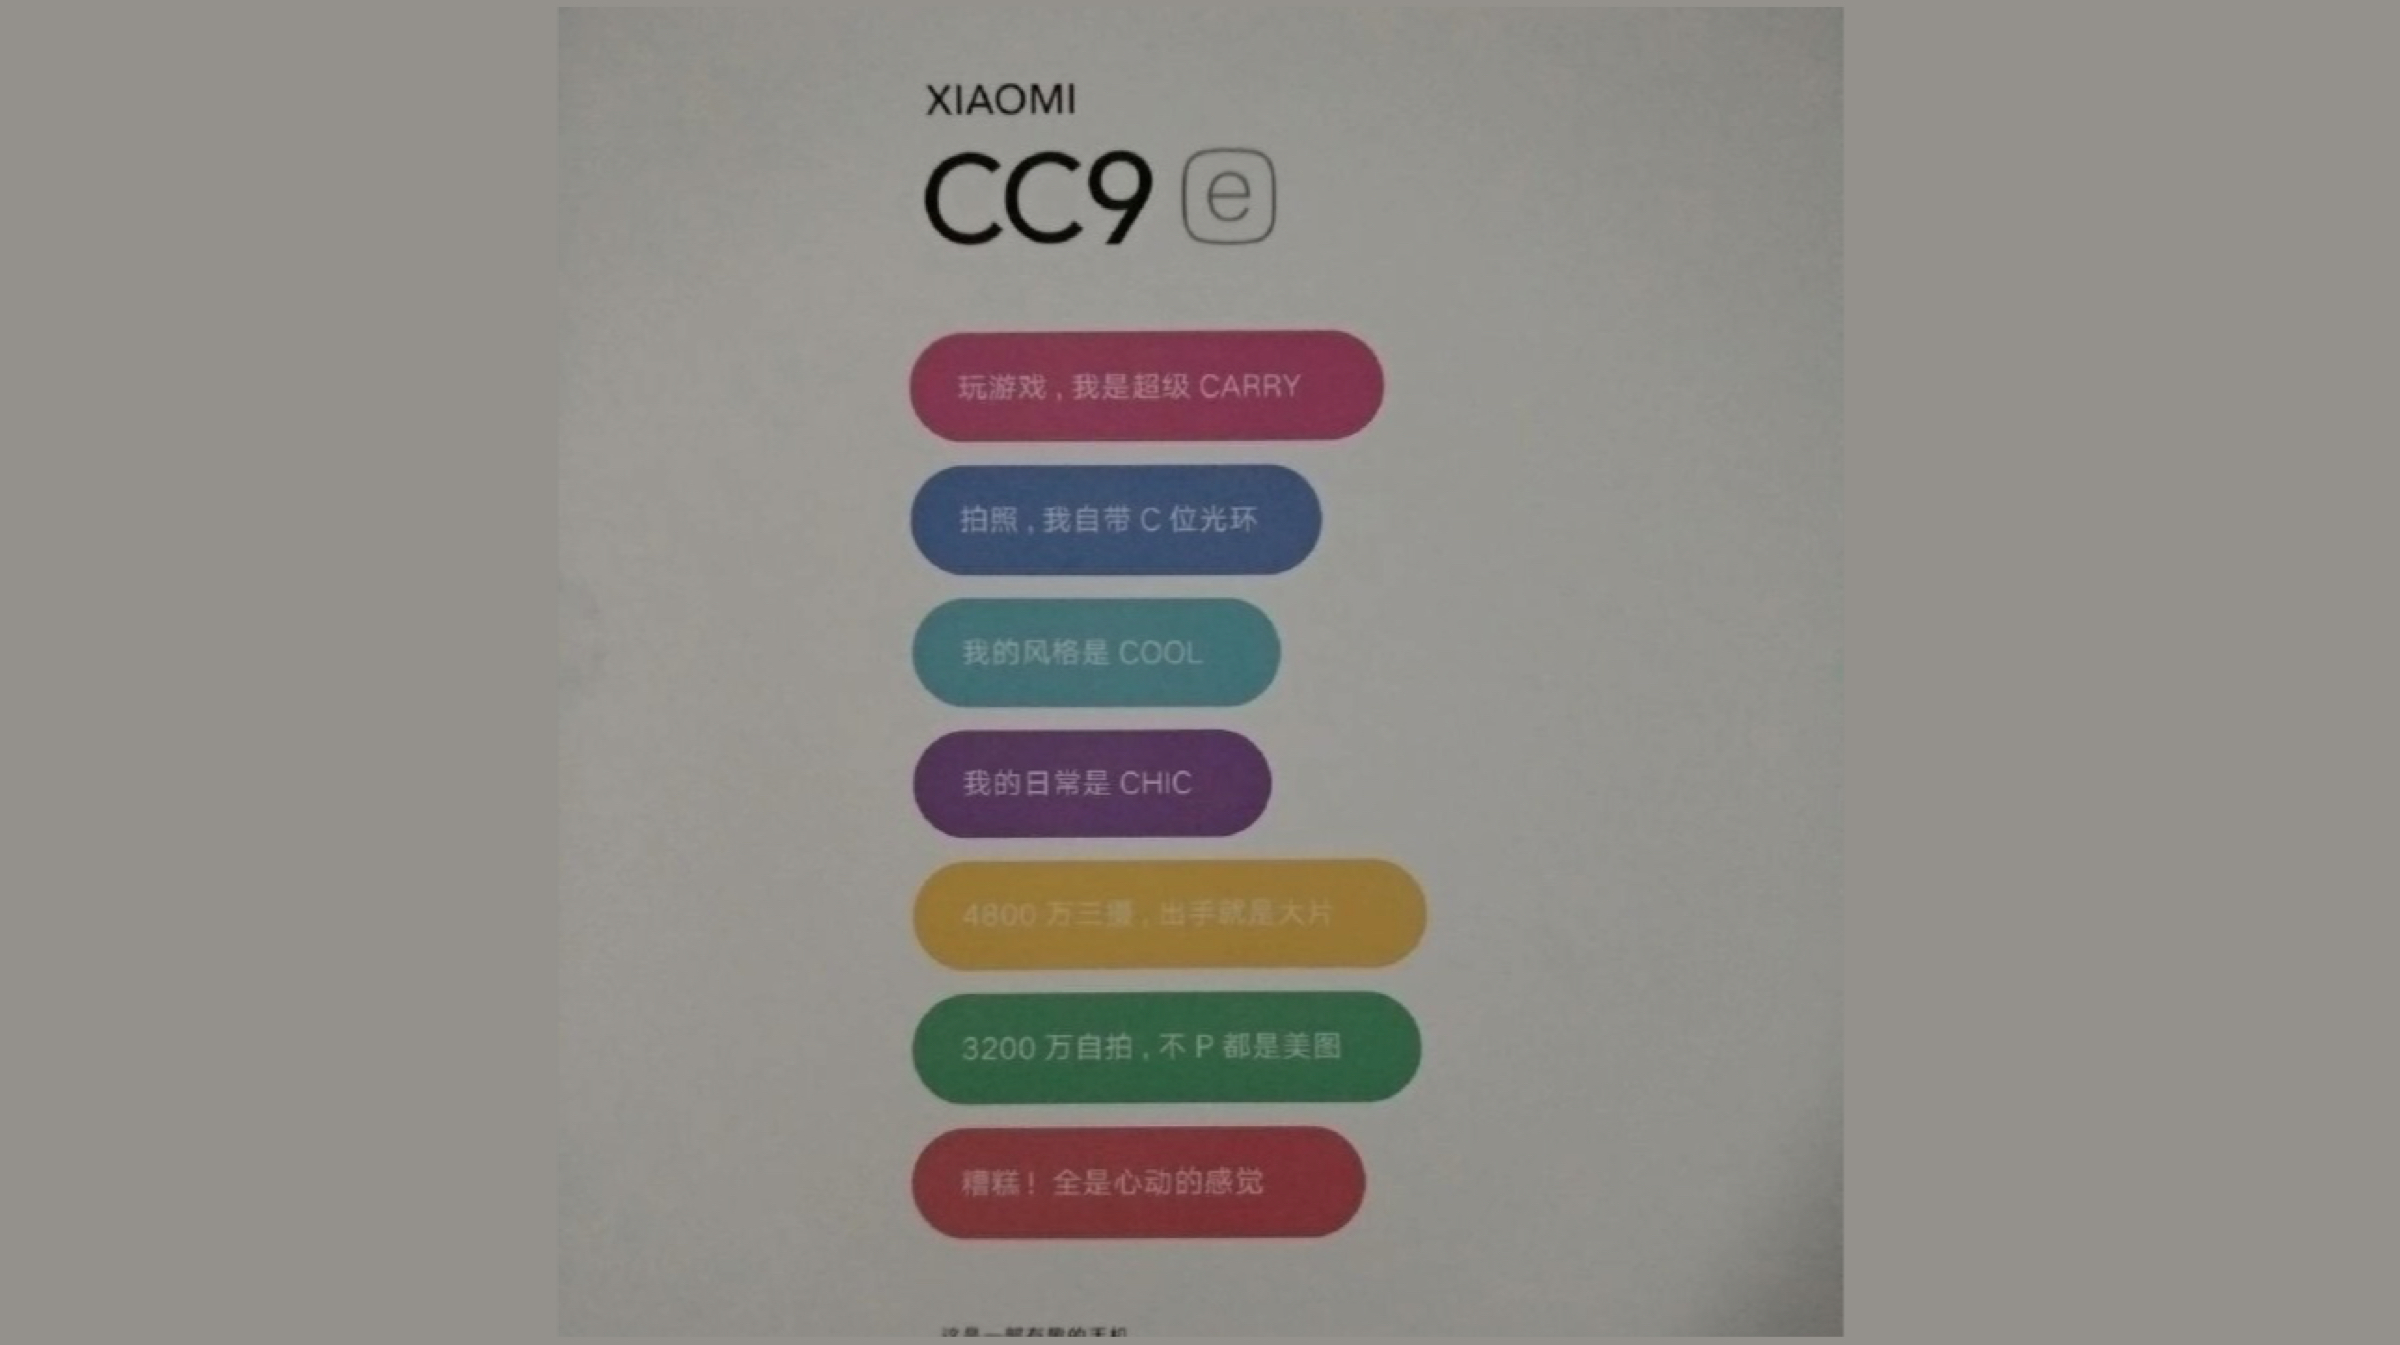 Xiaomi CC9e Poster